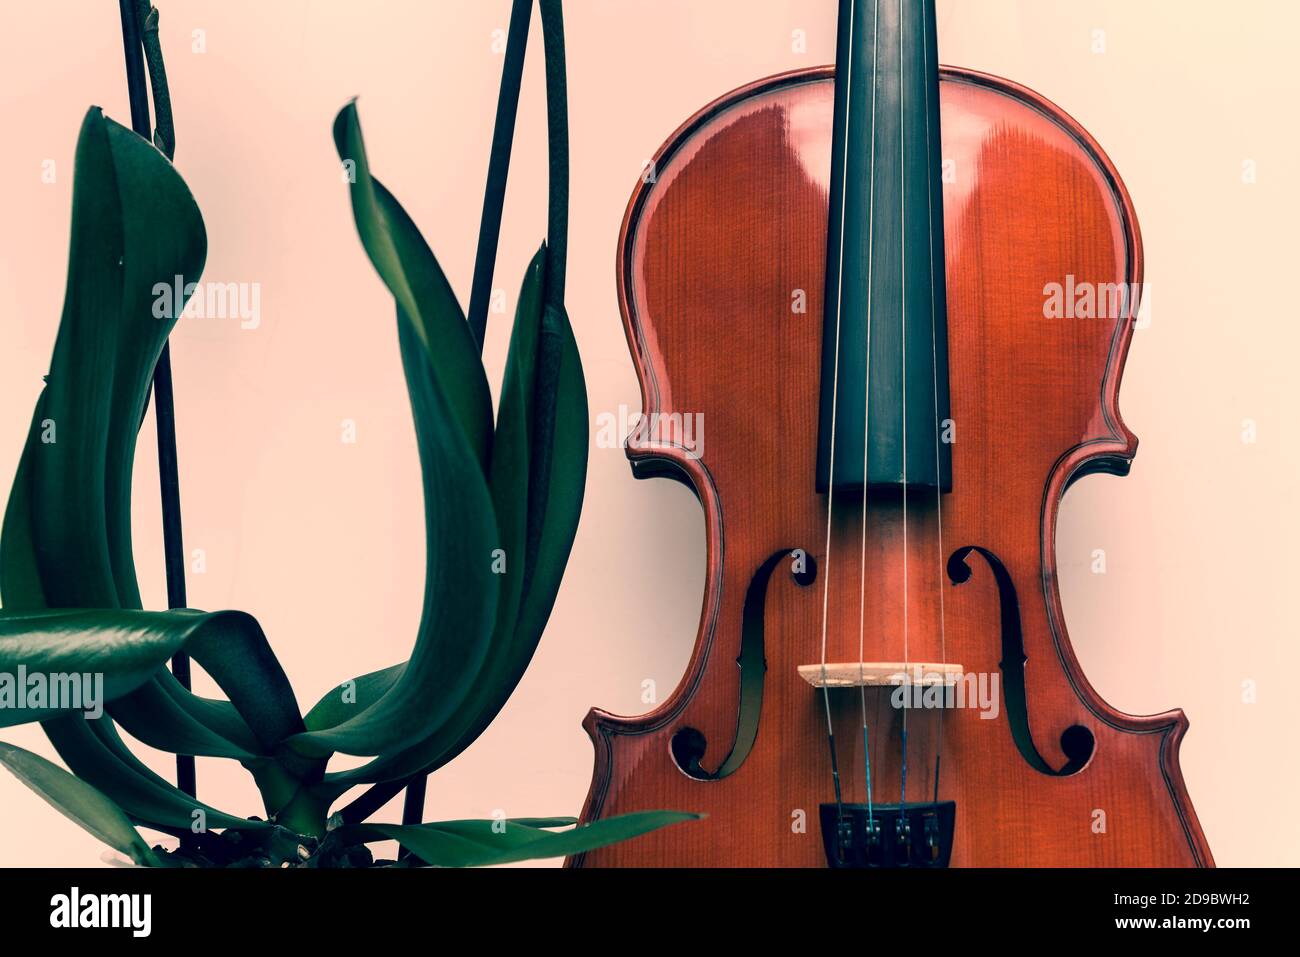 Gros plan de la Soundboard pour violon et des feuilles et des tiges d'orchidée. Beauté de la nature et de l'art Banque D'Images